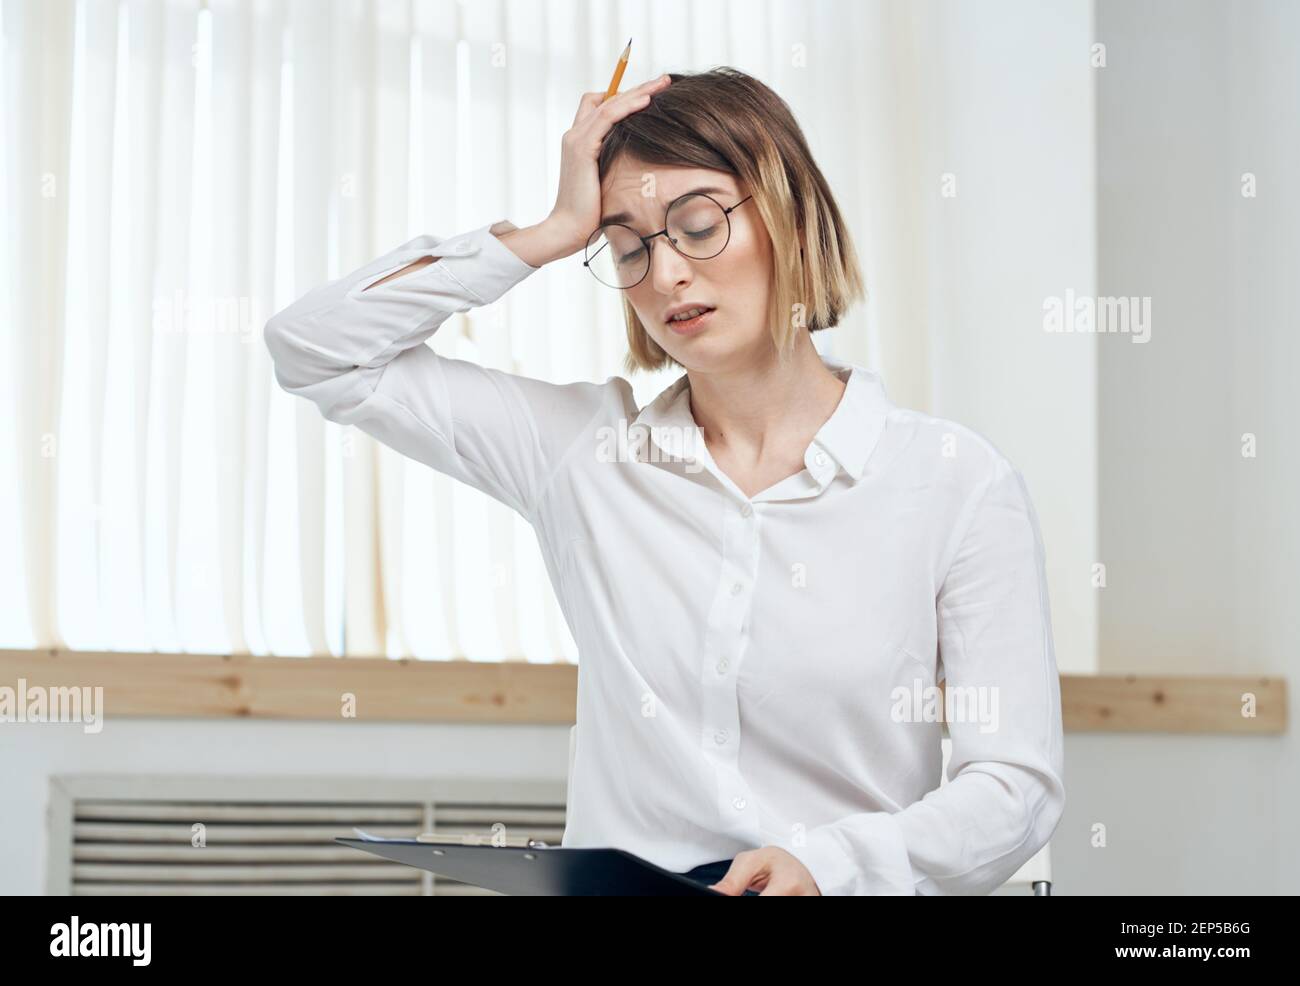 Business woman near window stress irritability emotions Stock Photo